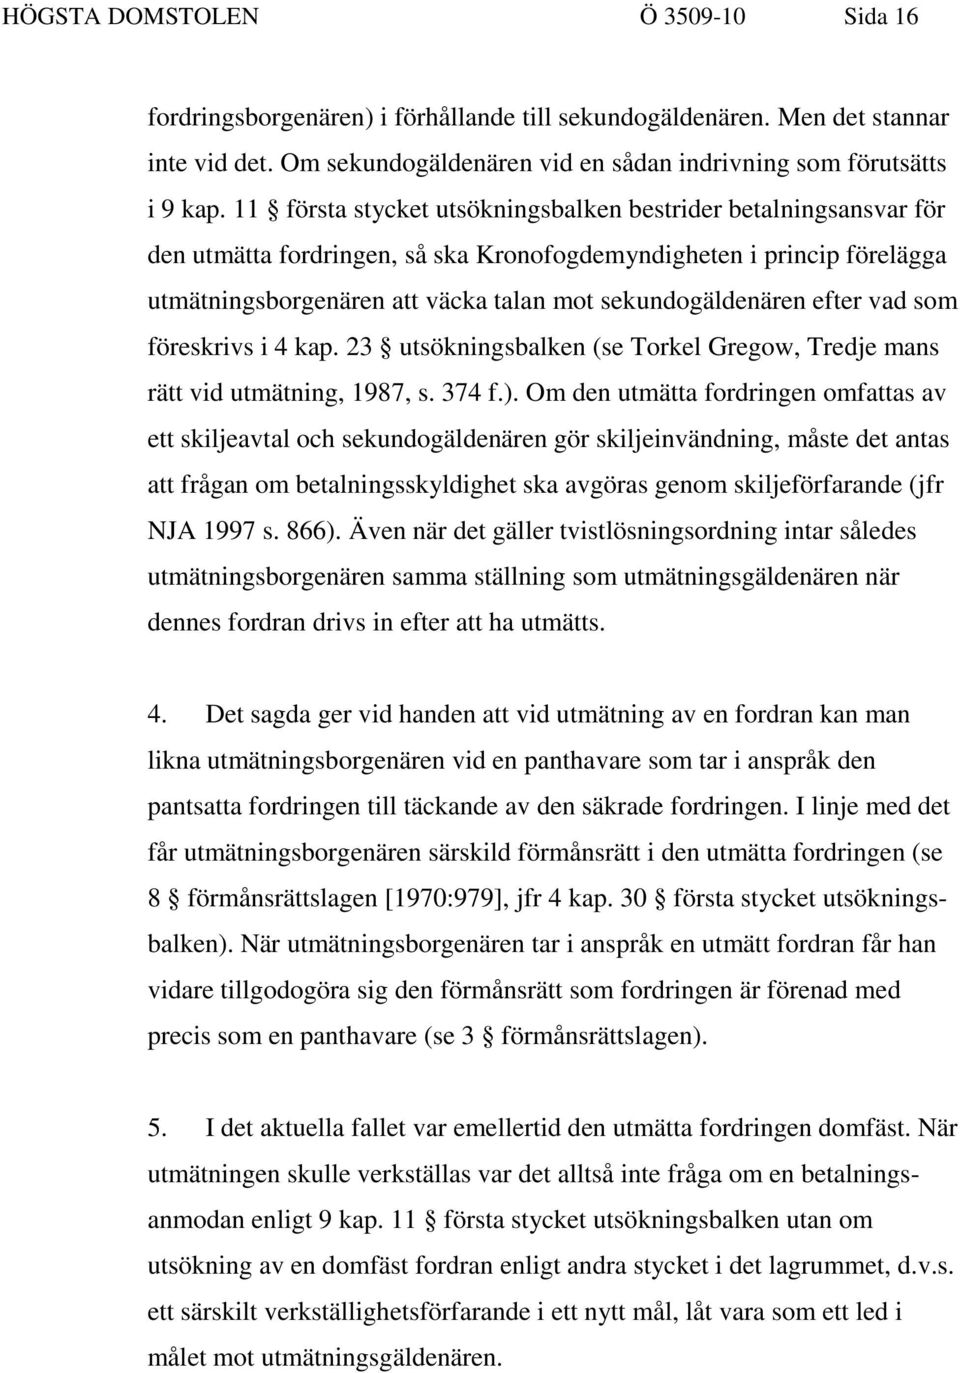 efter vad som föreskrivs i 4 kap. 23 utsökningsbalken (se Torkel Gregow, Tredje mans rätt vid utmätning, 1987, s. 374 f.).